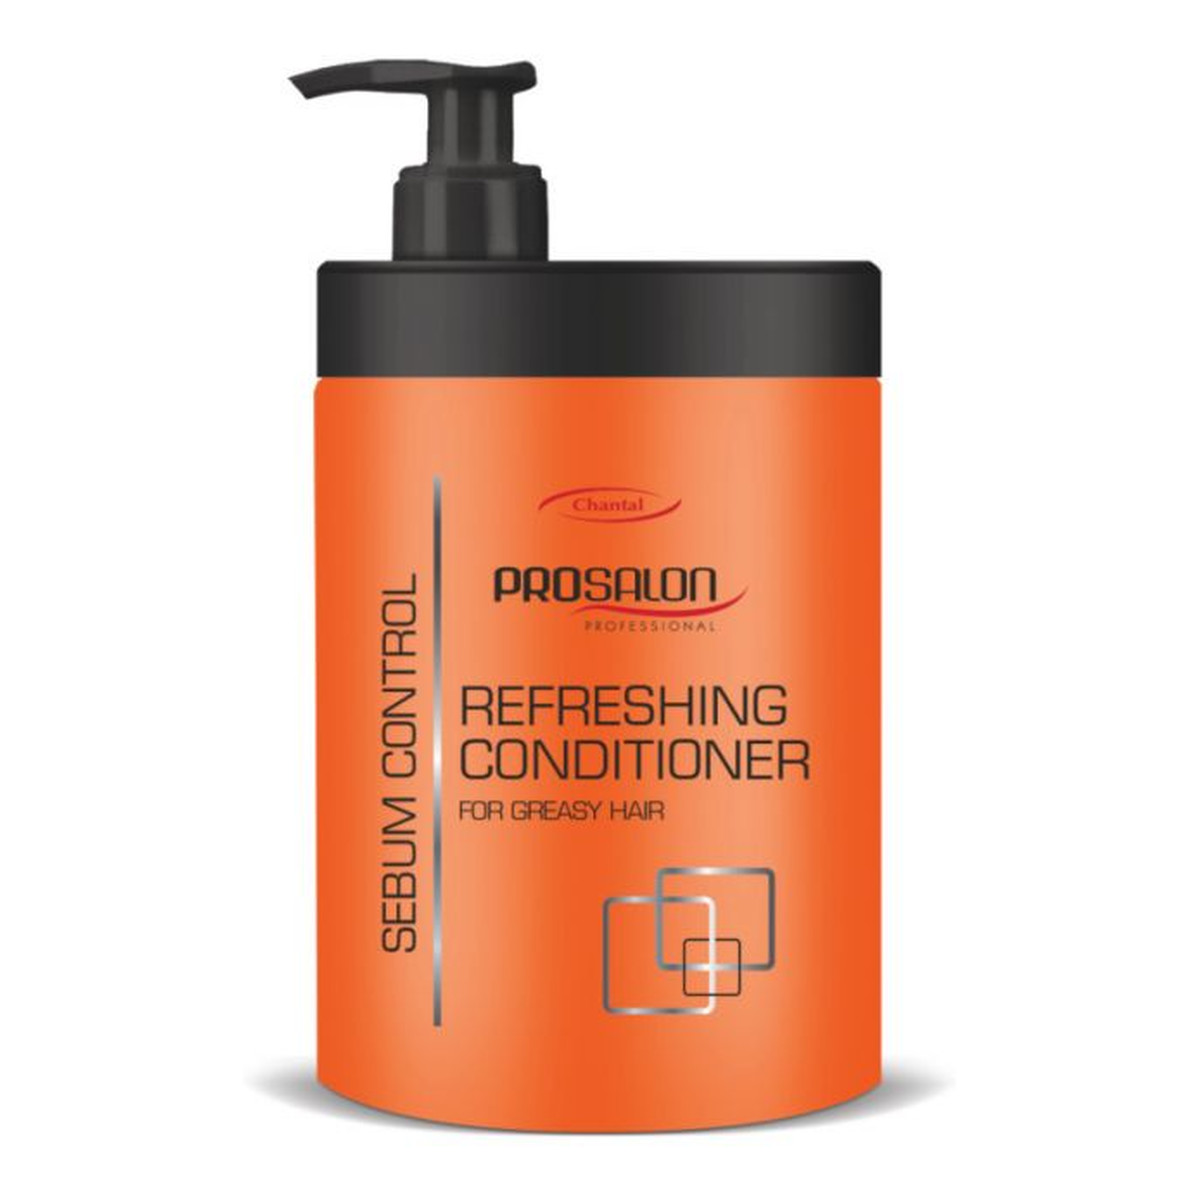 Chantal Profesional Prosalon Refreshing Conditioner For Greasy Hair odżywka odświeżająca do włosów 1000g